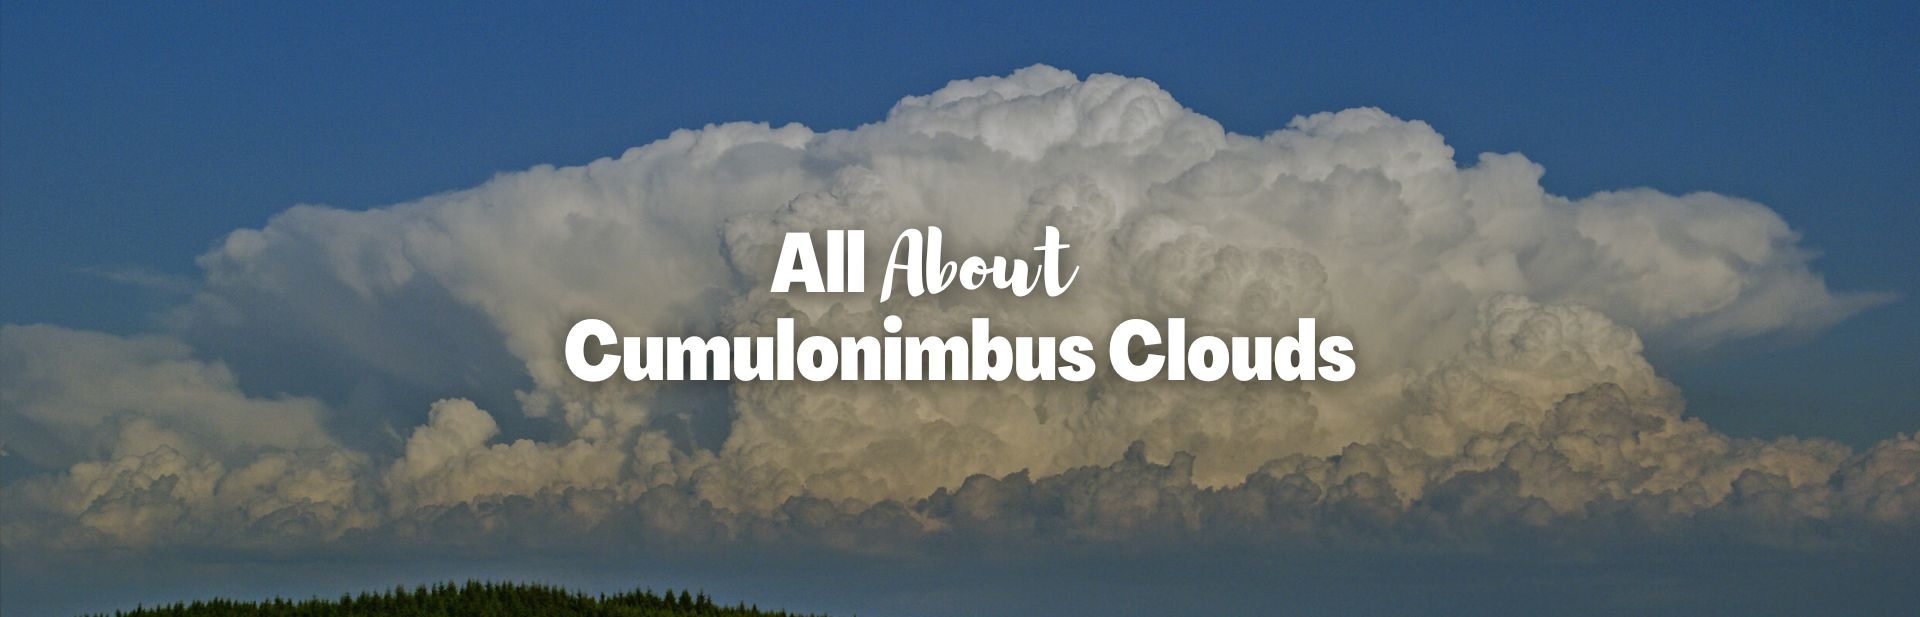 Cumulonimbus Clouds: The Sky’s Severe Weather Billboard